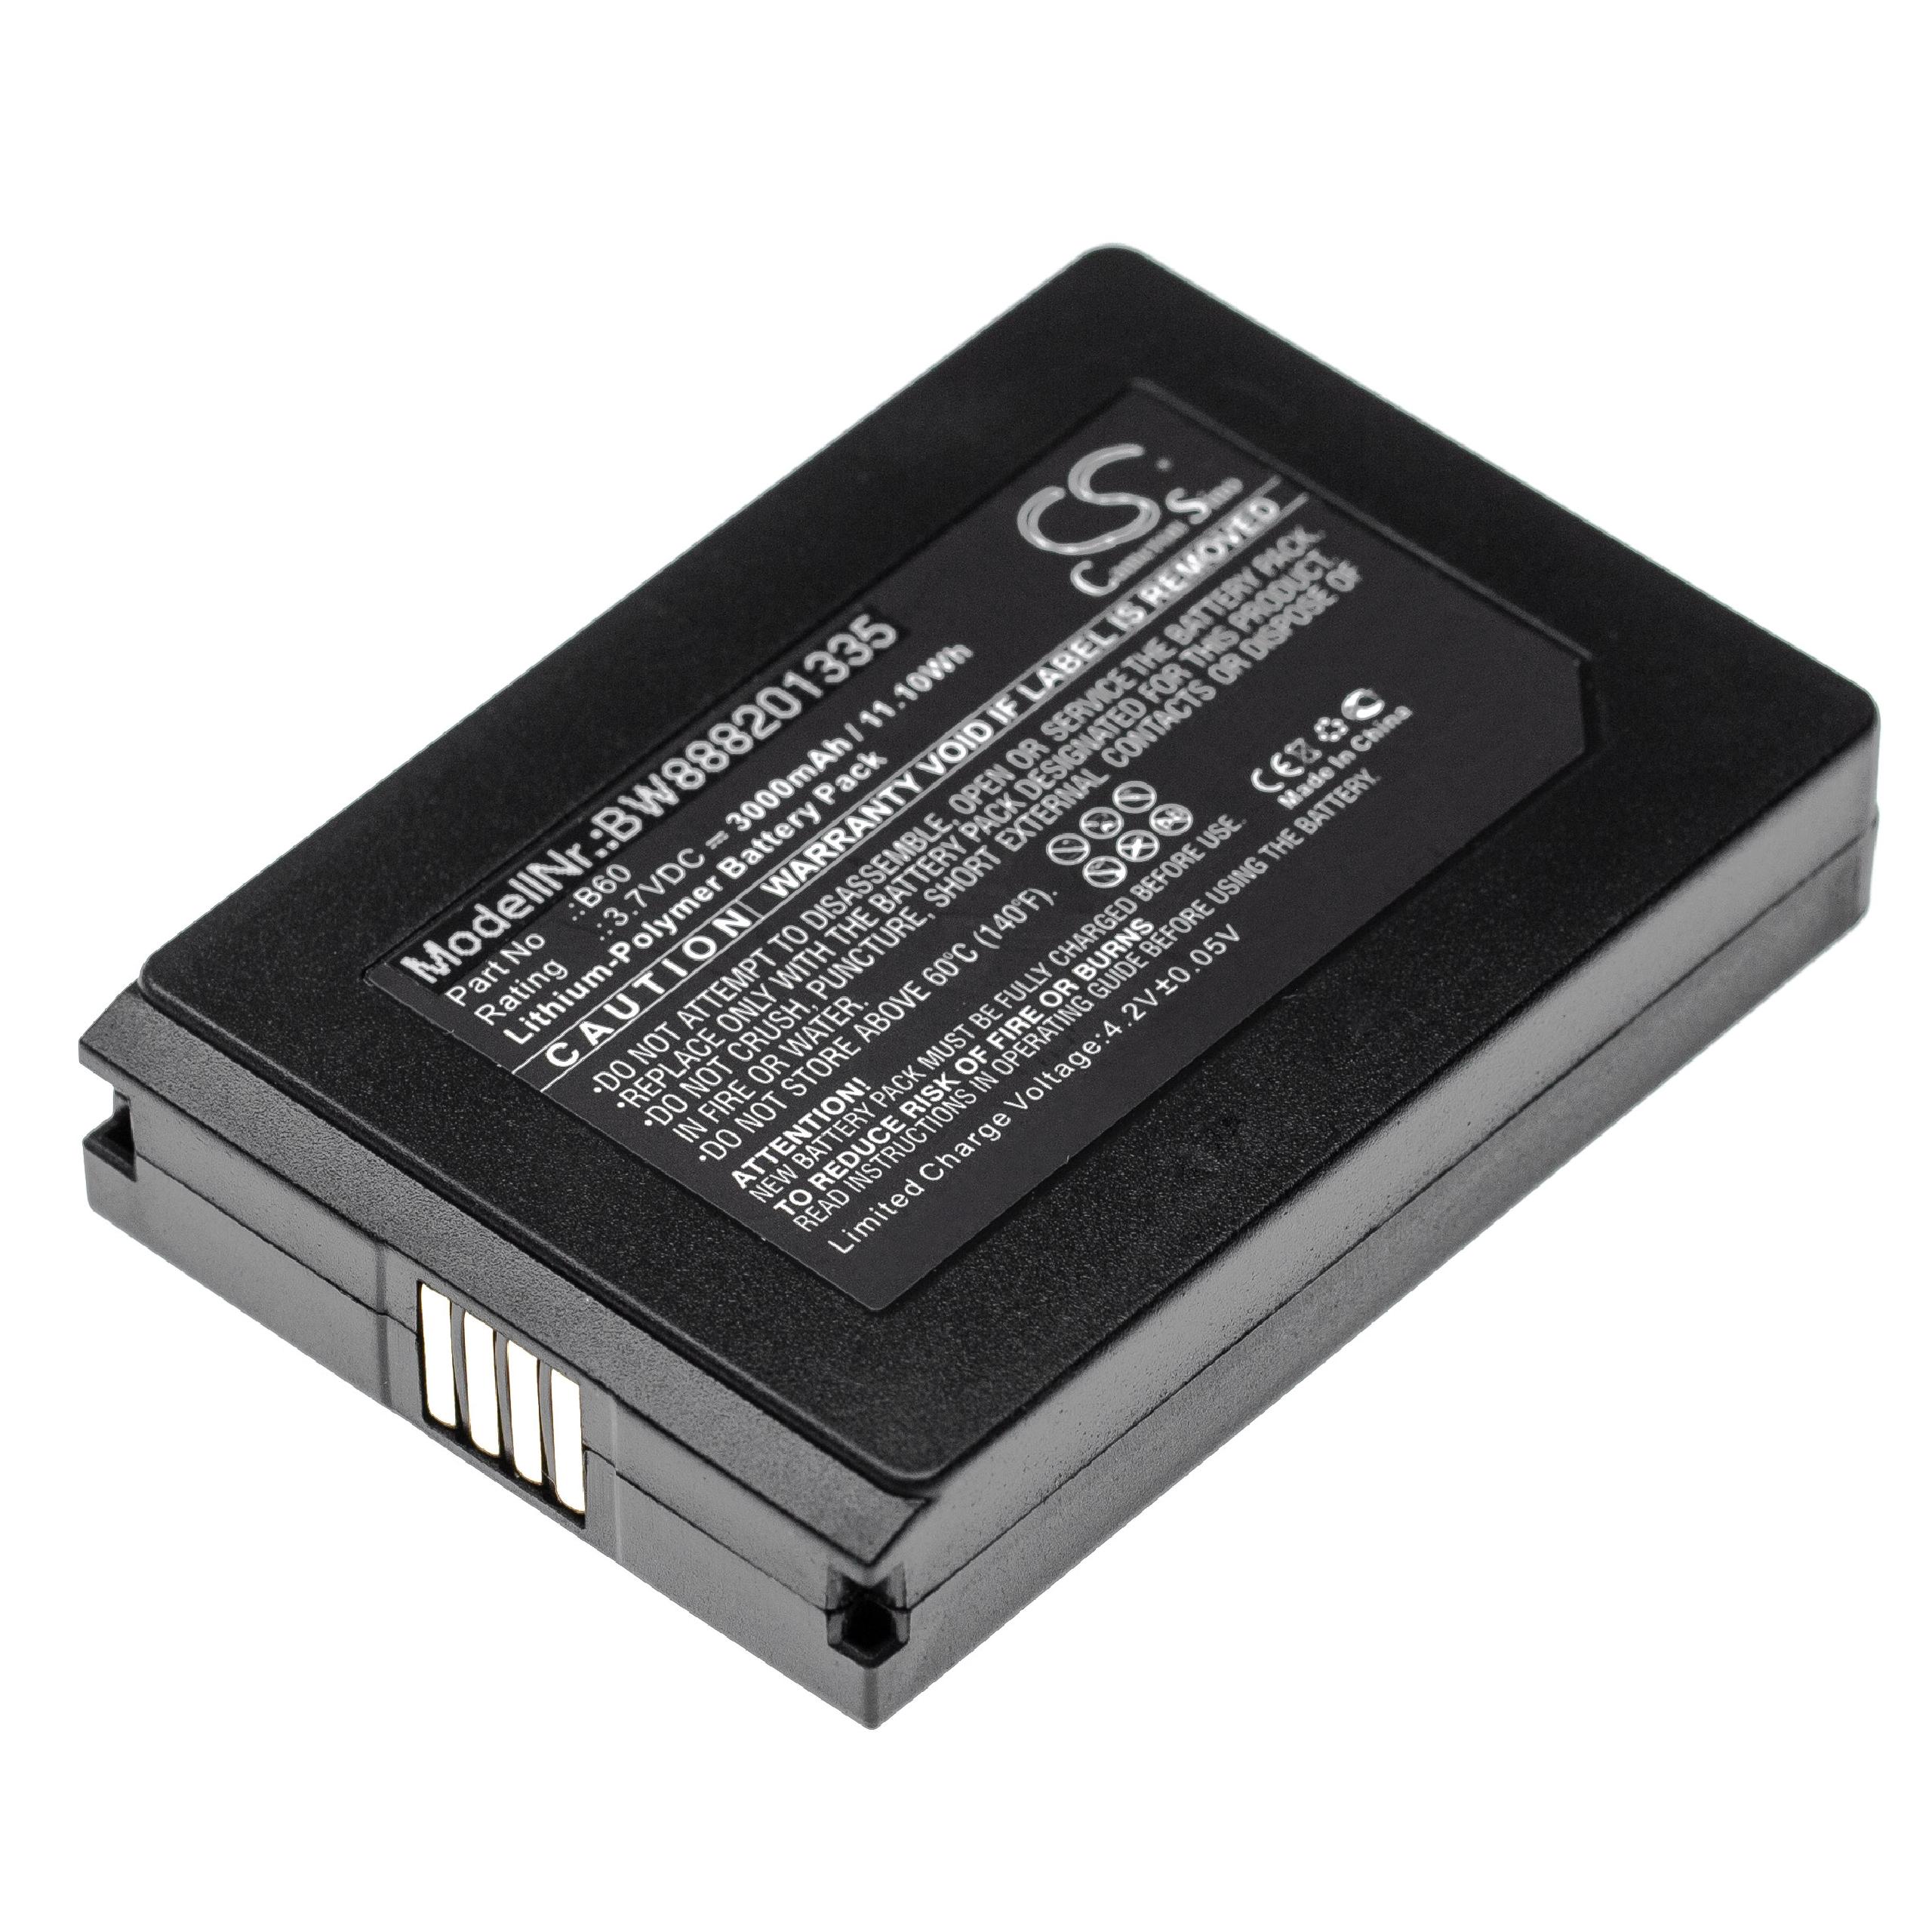 Batería reemplaza Vectron B60 para escáner de código de barras Vectron - 3000 mAh 3,7 V Li-poli